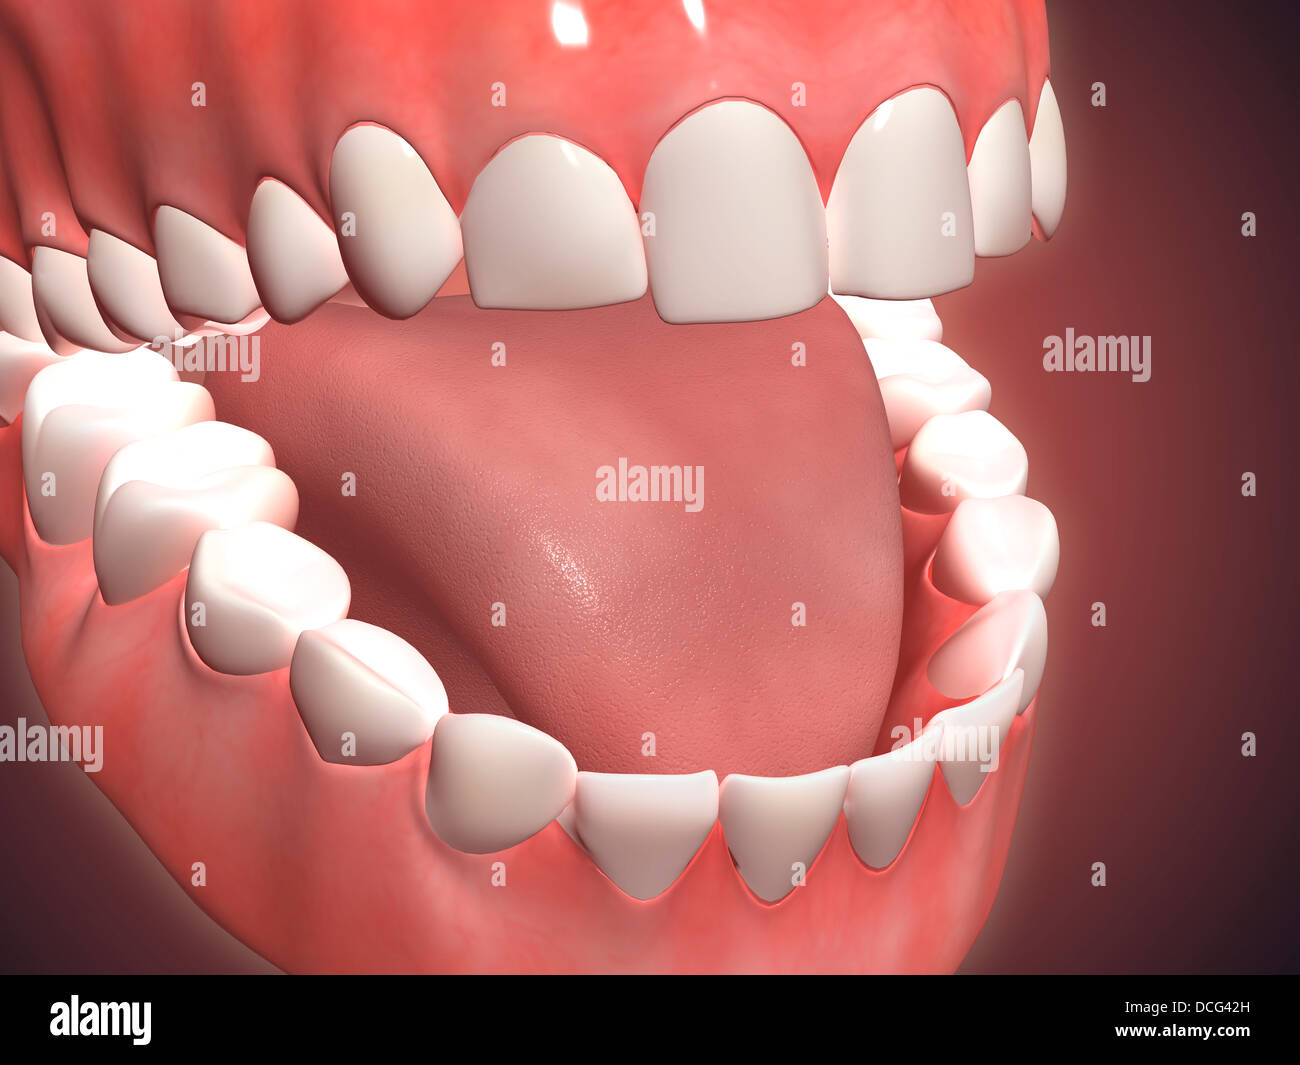 Medizinische Illustration der menschliche Mund öffnen, zeigt Zähne, Zahnfleisch und Zunge. Stockfoto